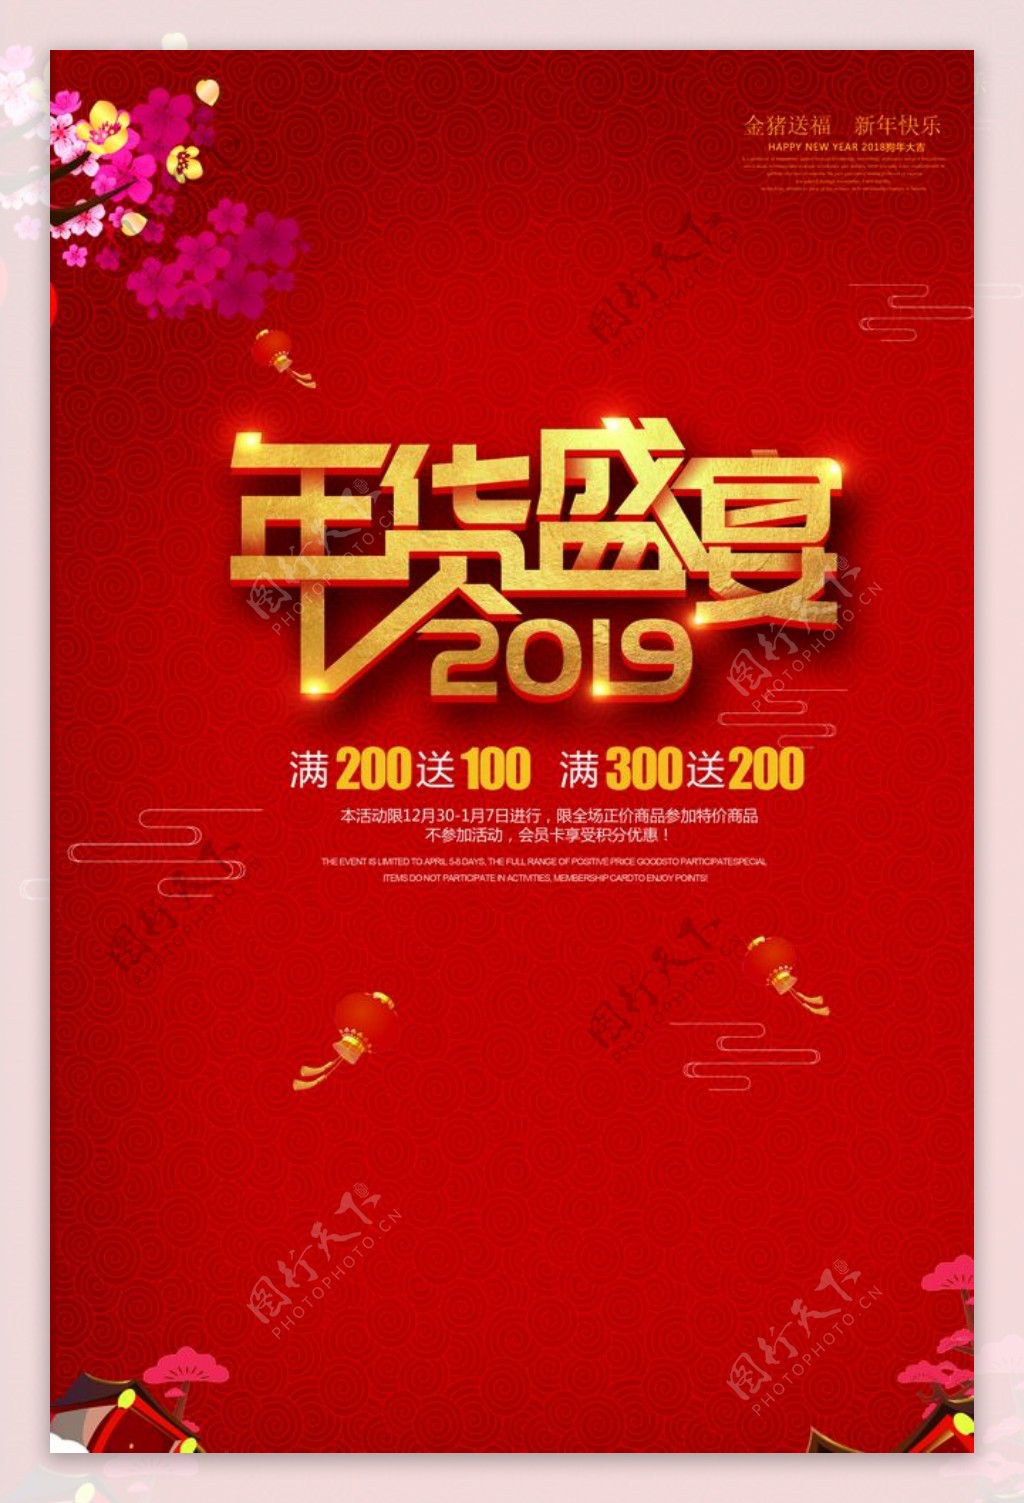 2019年红色背景新年快乐